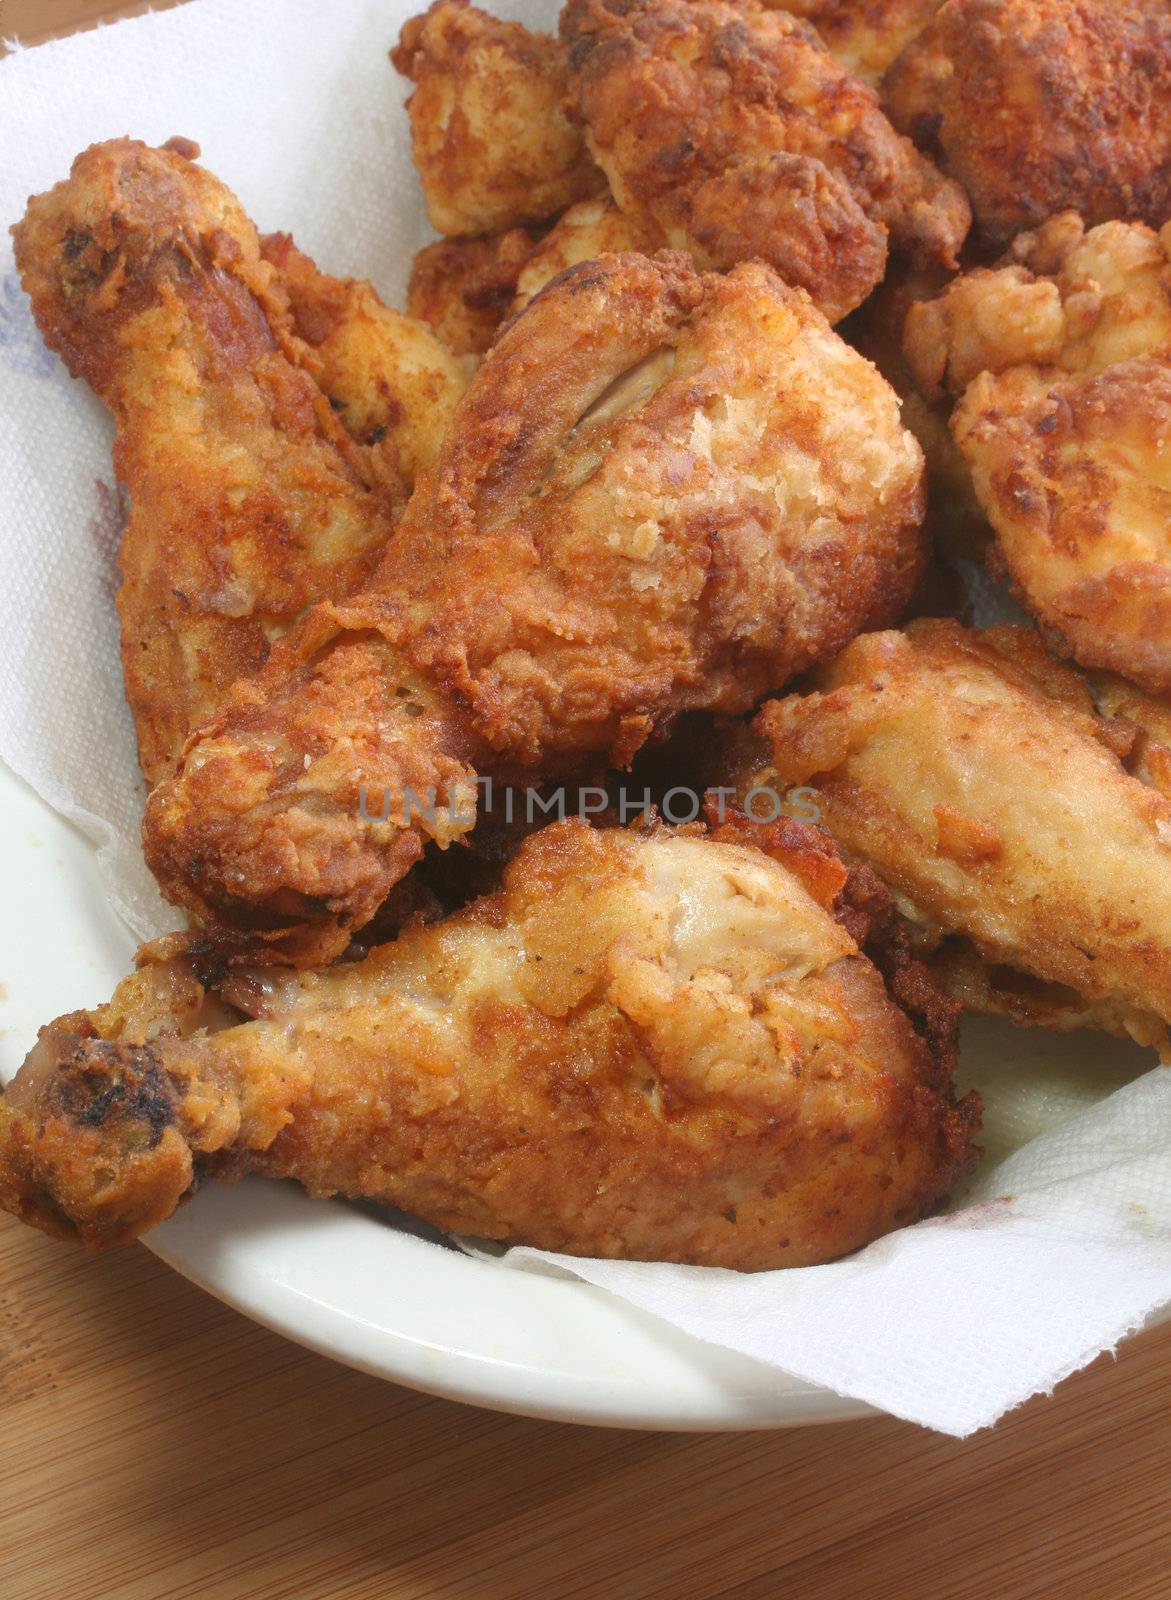 Fried Chicken by Geoarts